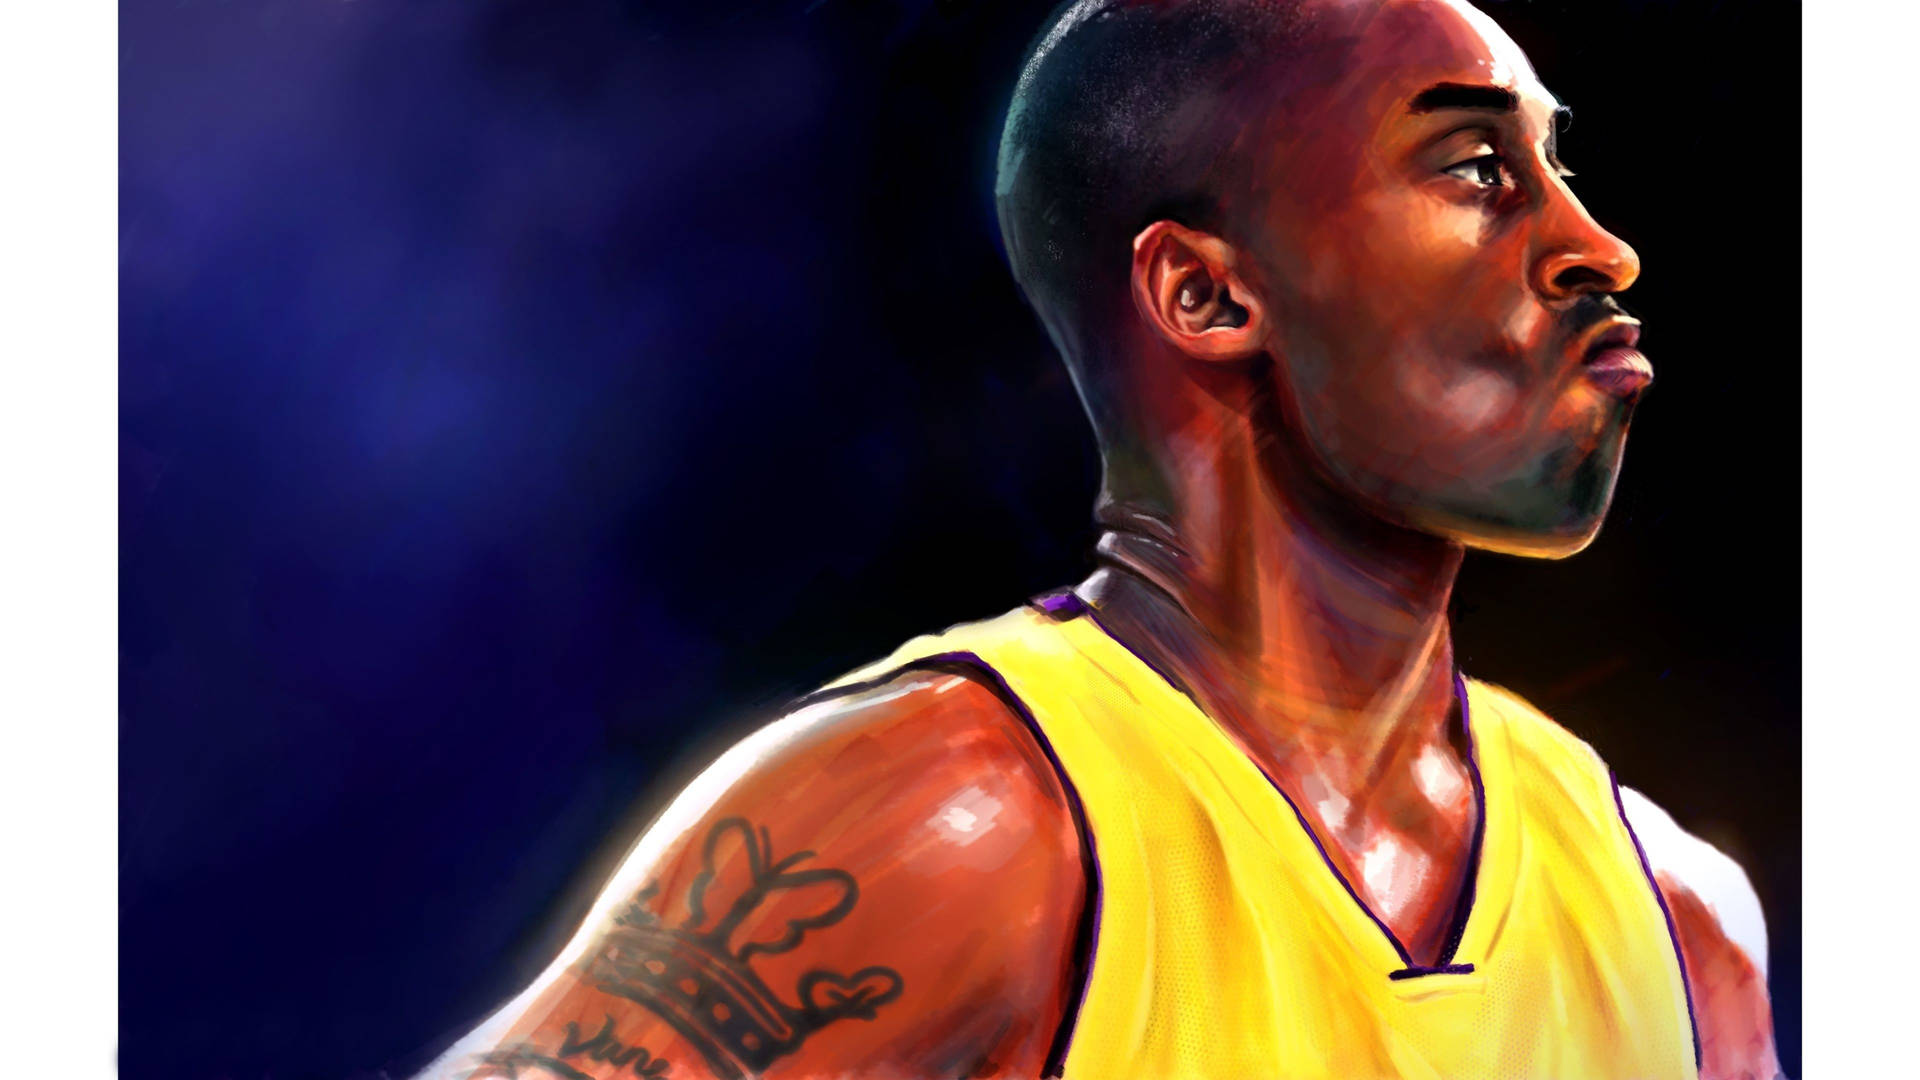 Kobe Bryant Digital Painting 4k Background